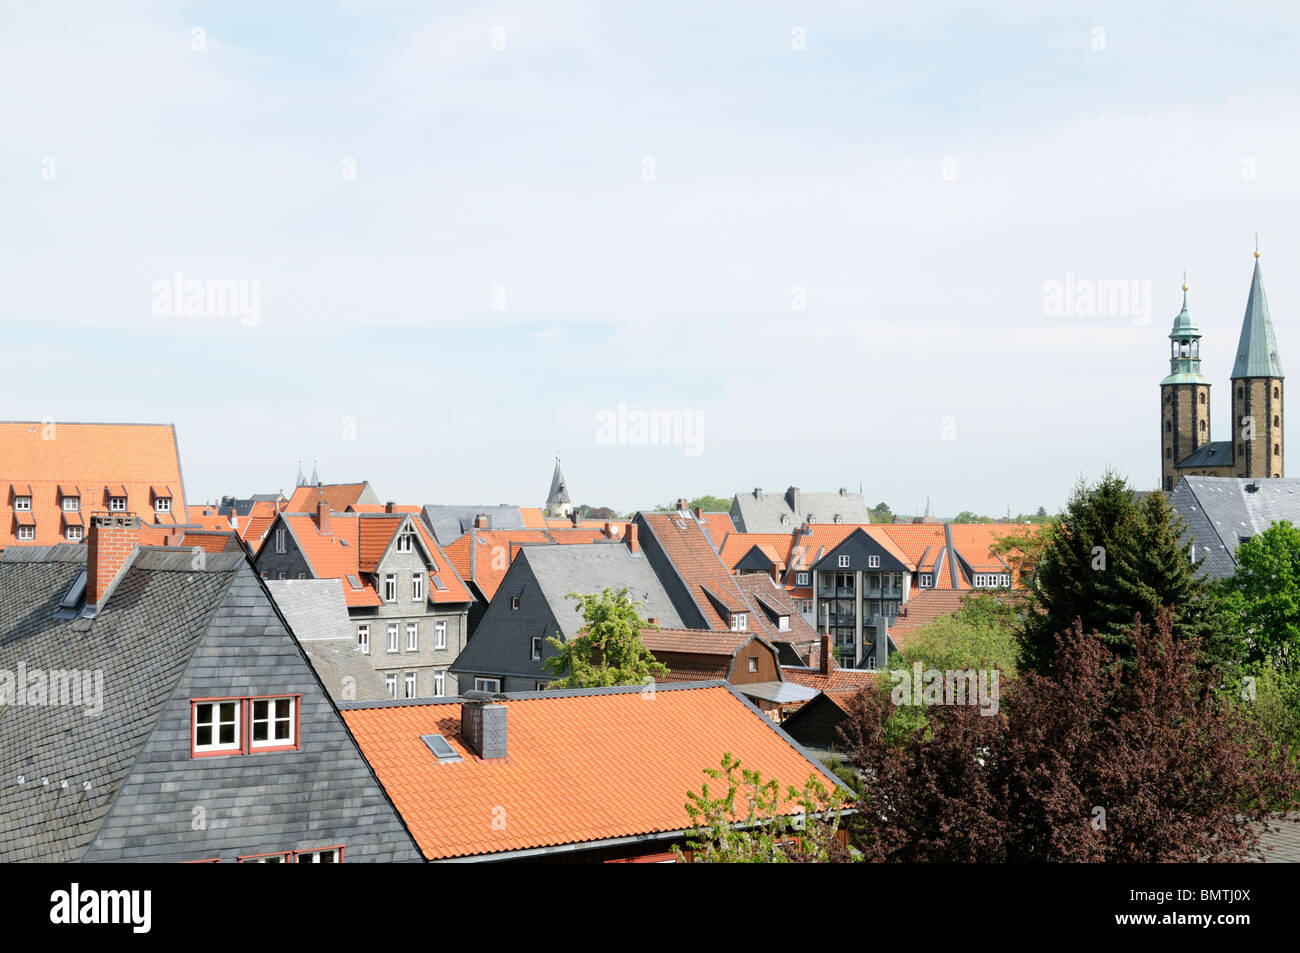 Über Den Juli von Goslar, Niedersachsen, Deutschland. -Über den Dächern von Goslar, Niedersachsen, Deutschland. Stockfoto